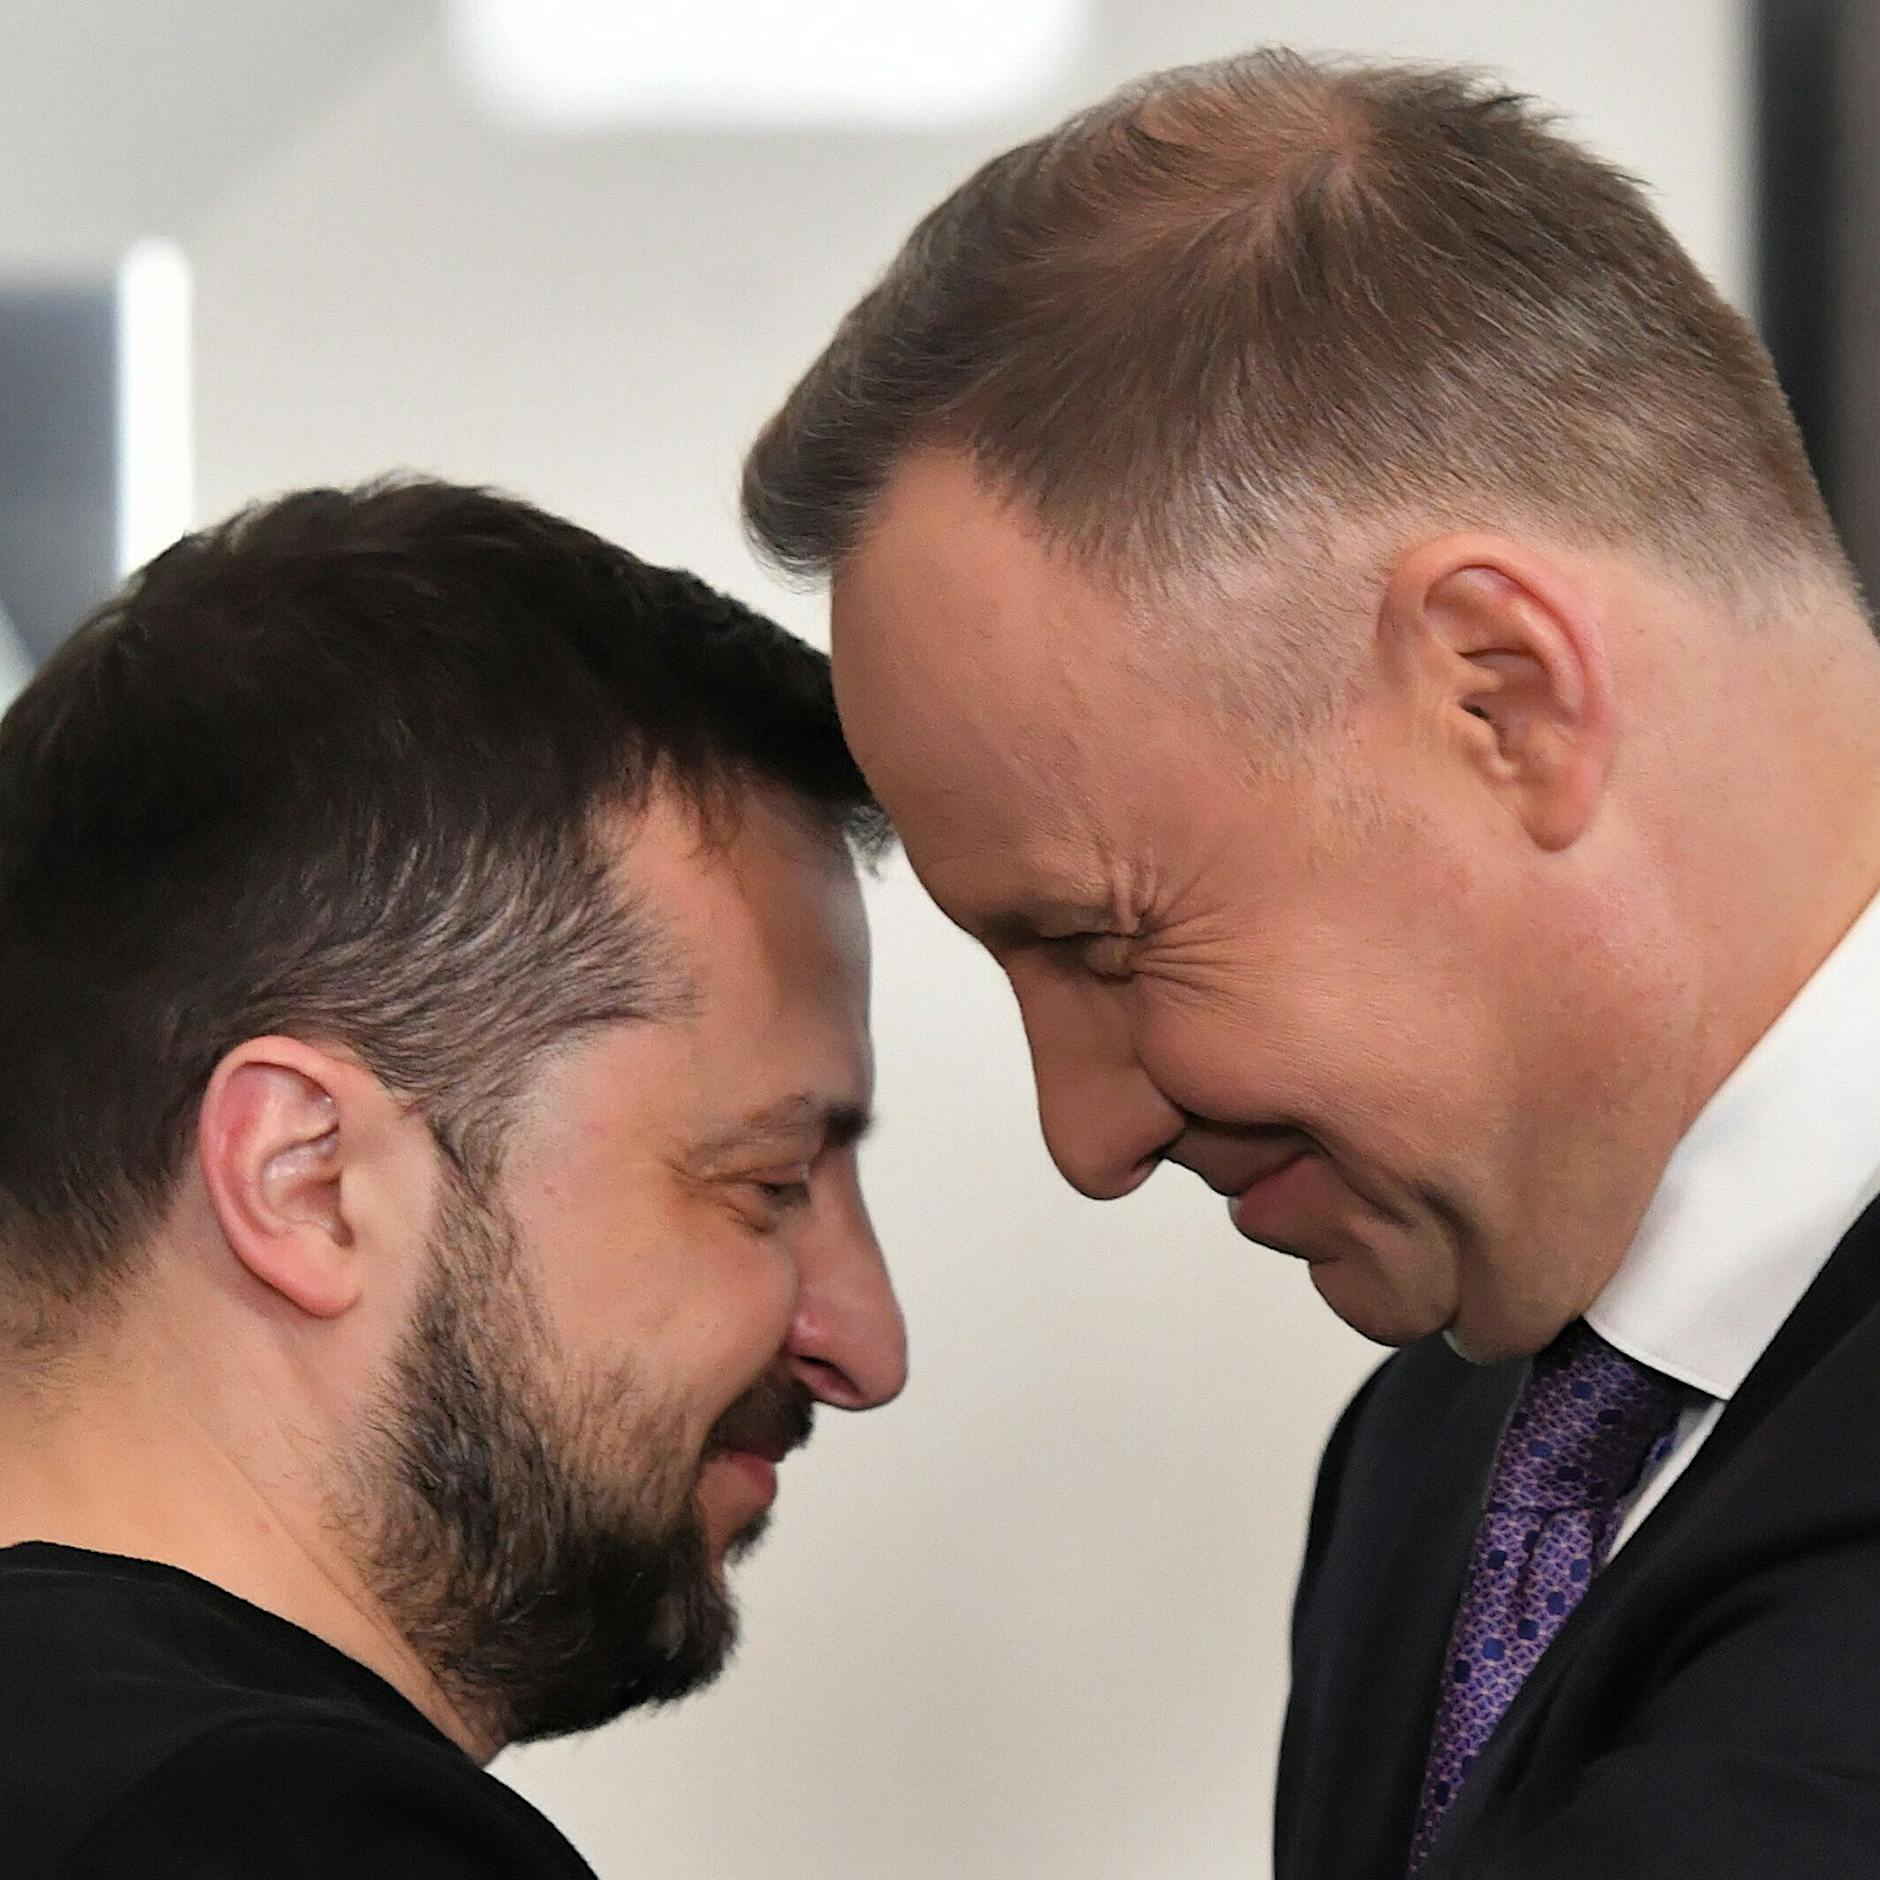 Polen und Ukraine: Ex-Freunde? Die wichtigsten Argumente für den Streit der beiden Länder